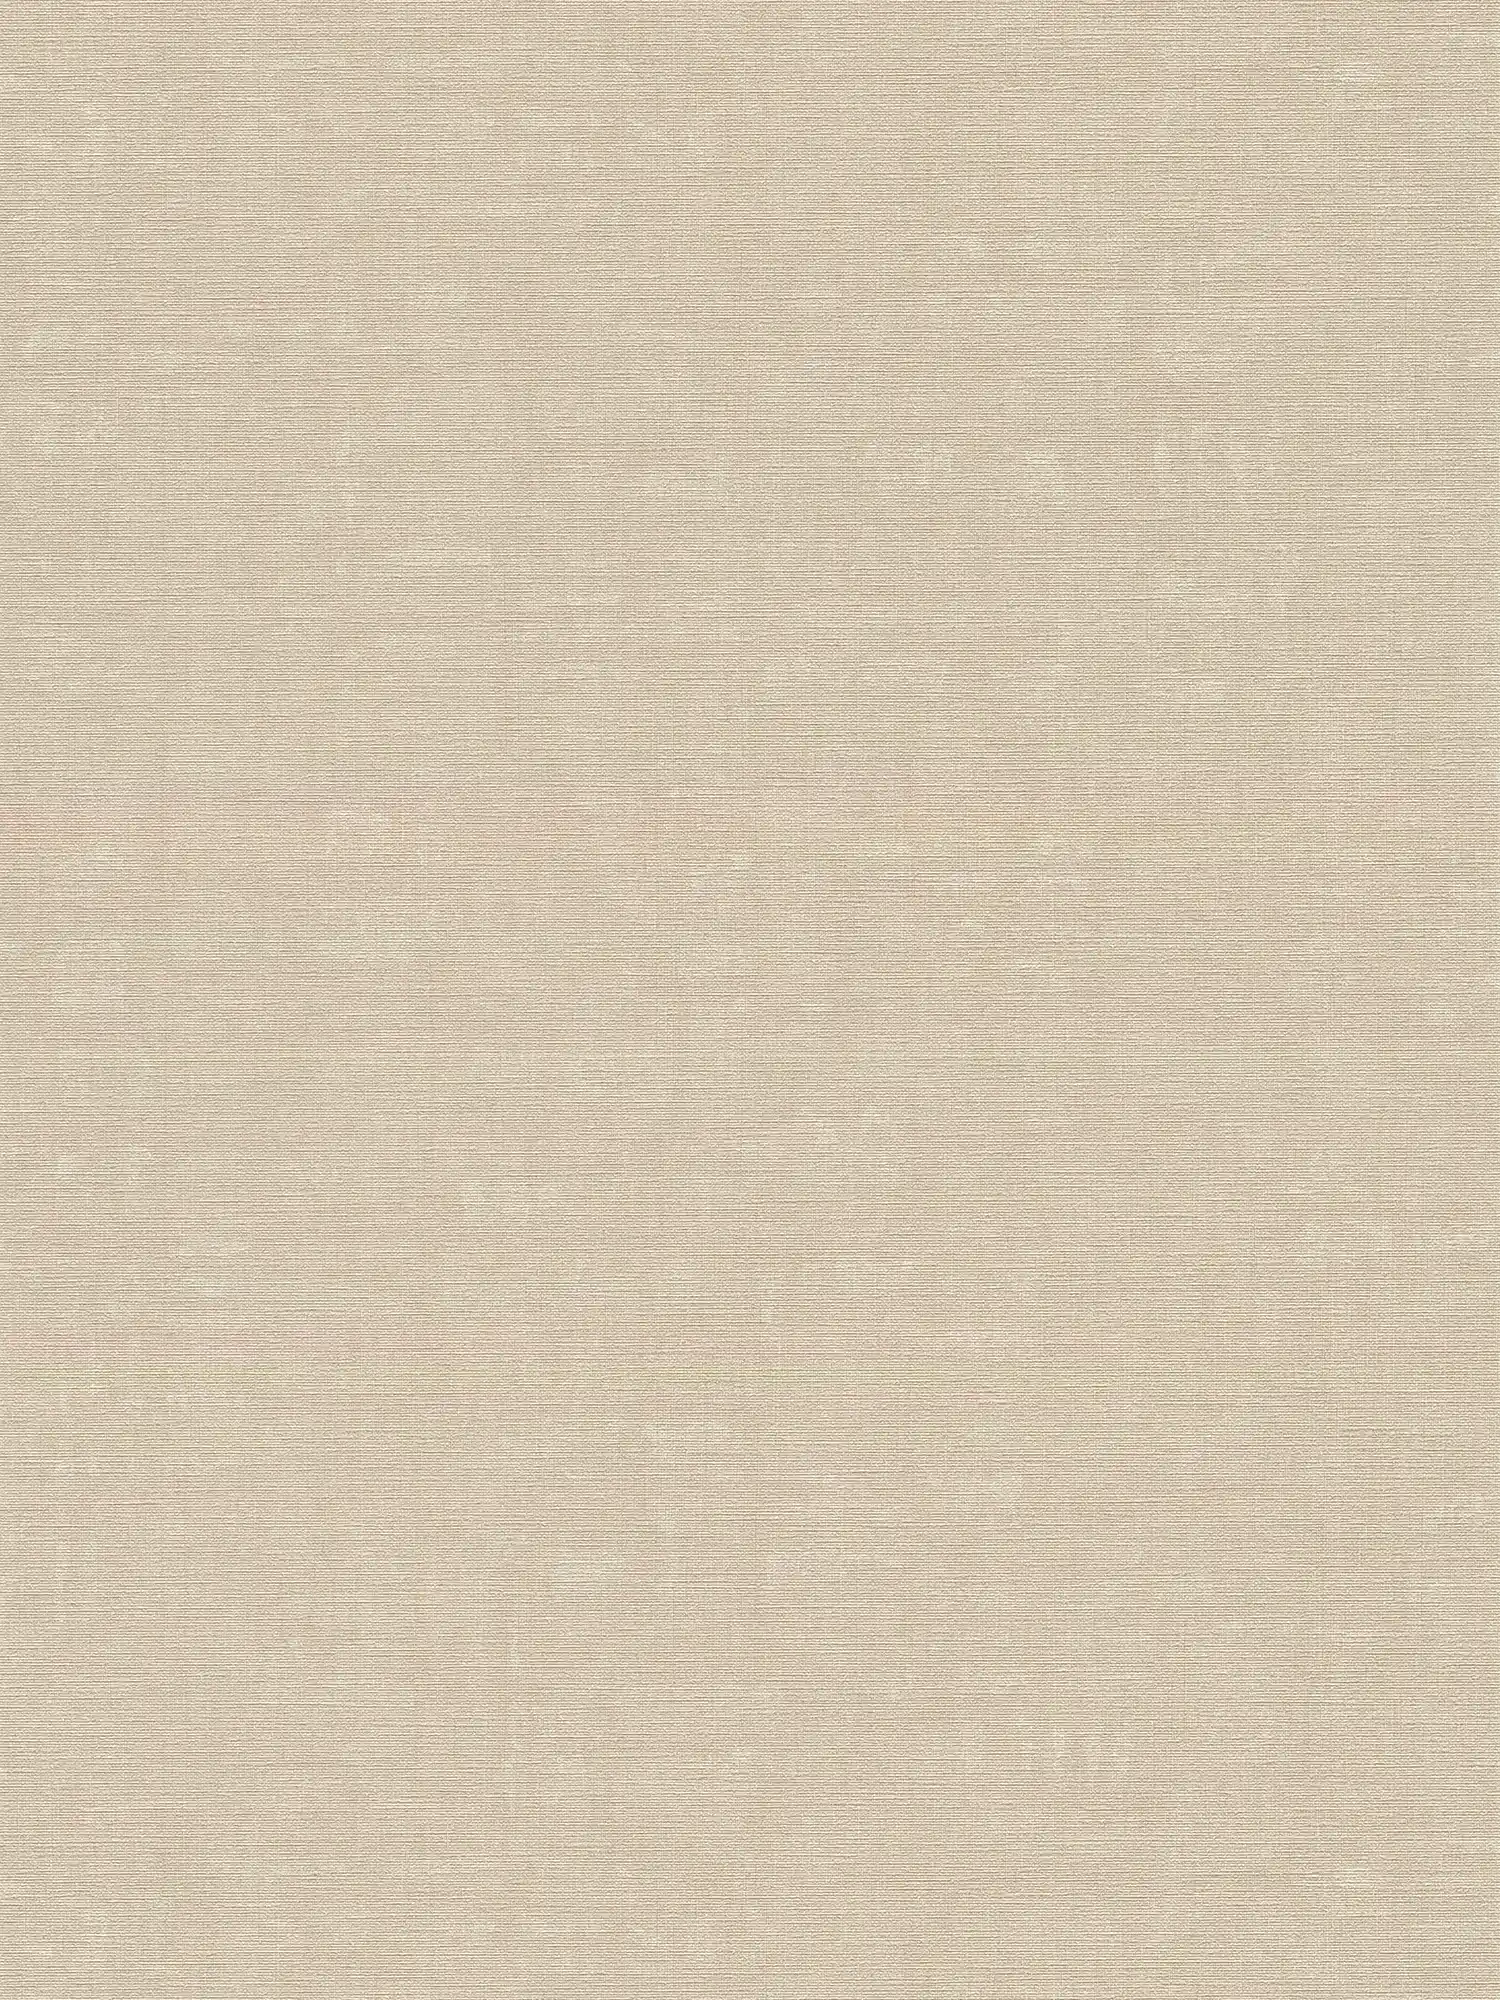 Papier peint chiné uni avec motif à texture - gris, beige
